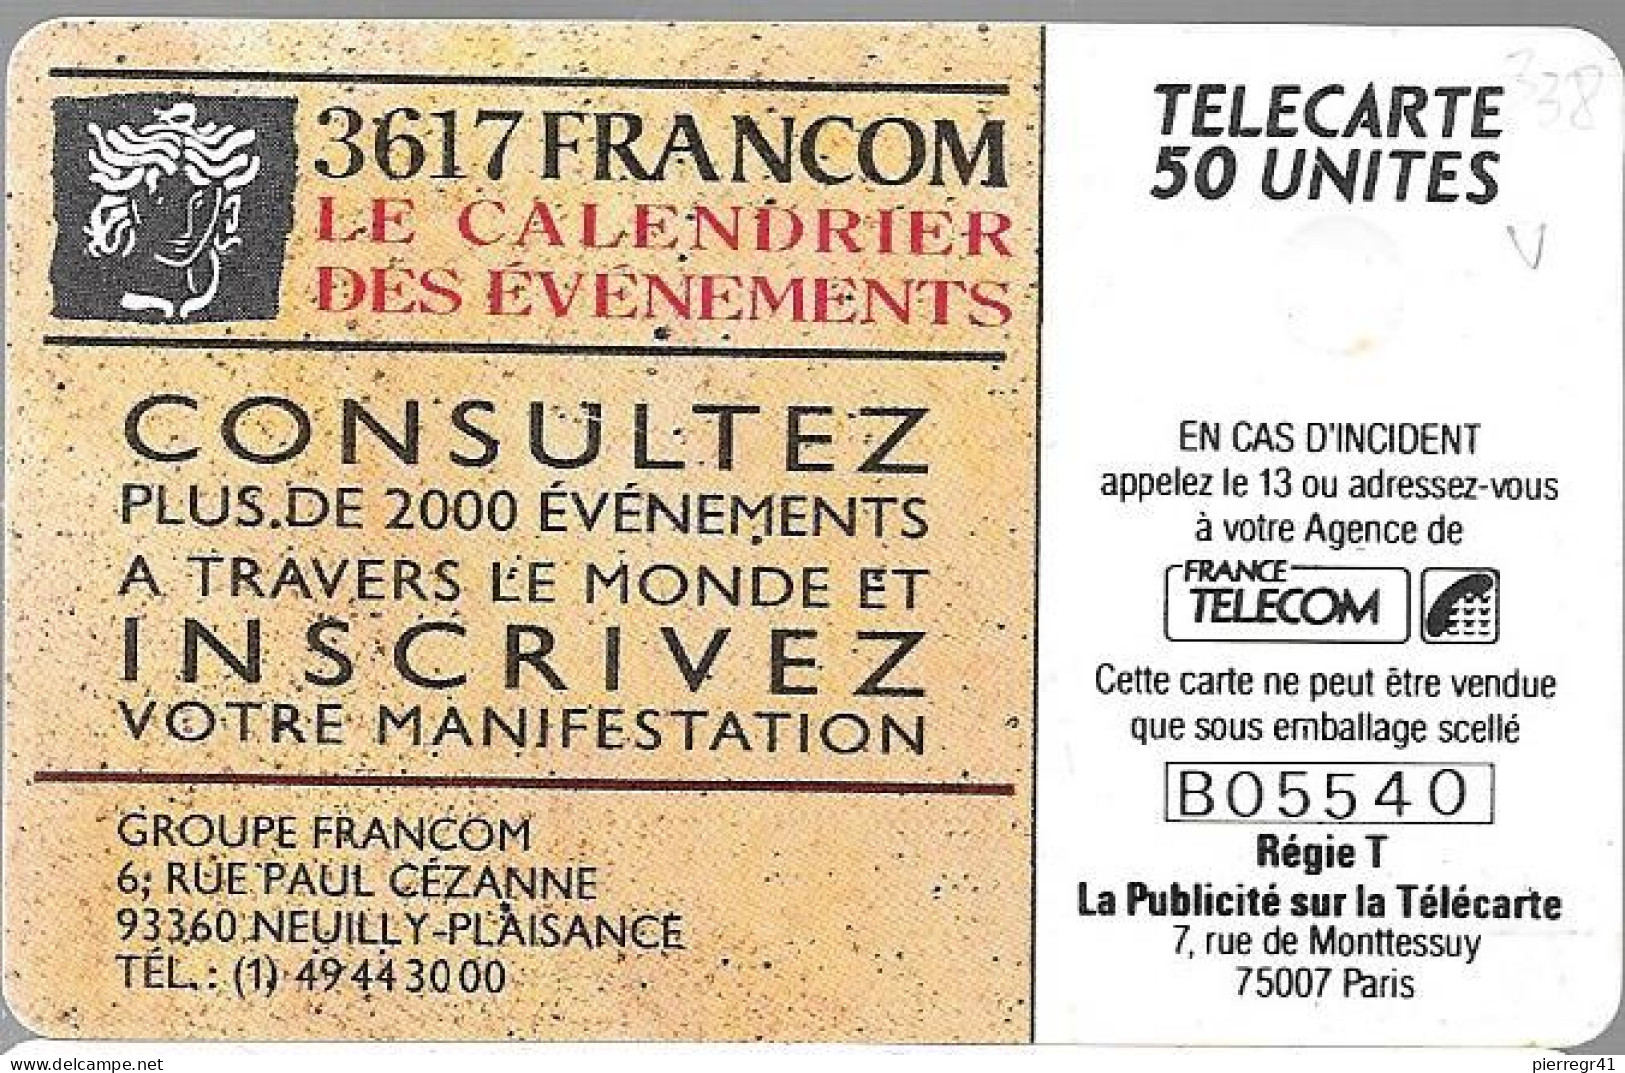 CARTE-PRIVEE-1990-D338-02/91-GEMA-3617 FRANCOM-Minitel Evénements-1000ex-R° Laqué-Utilisé-TBE/LUXE - Privées